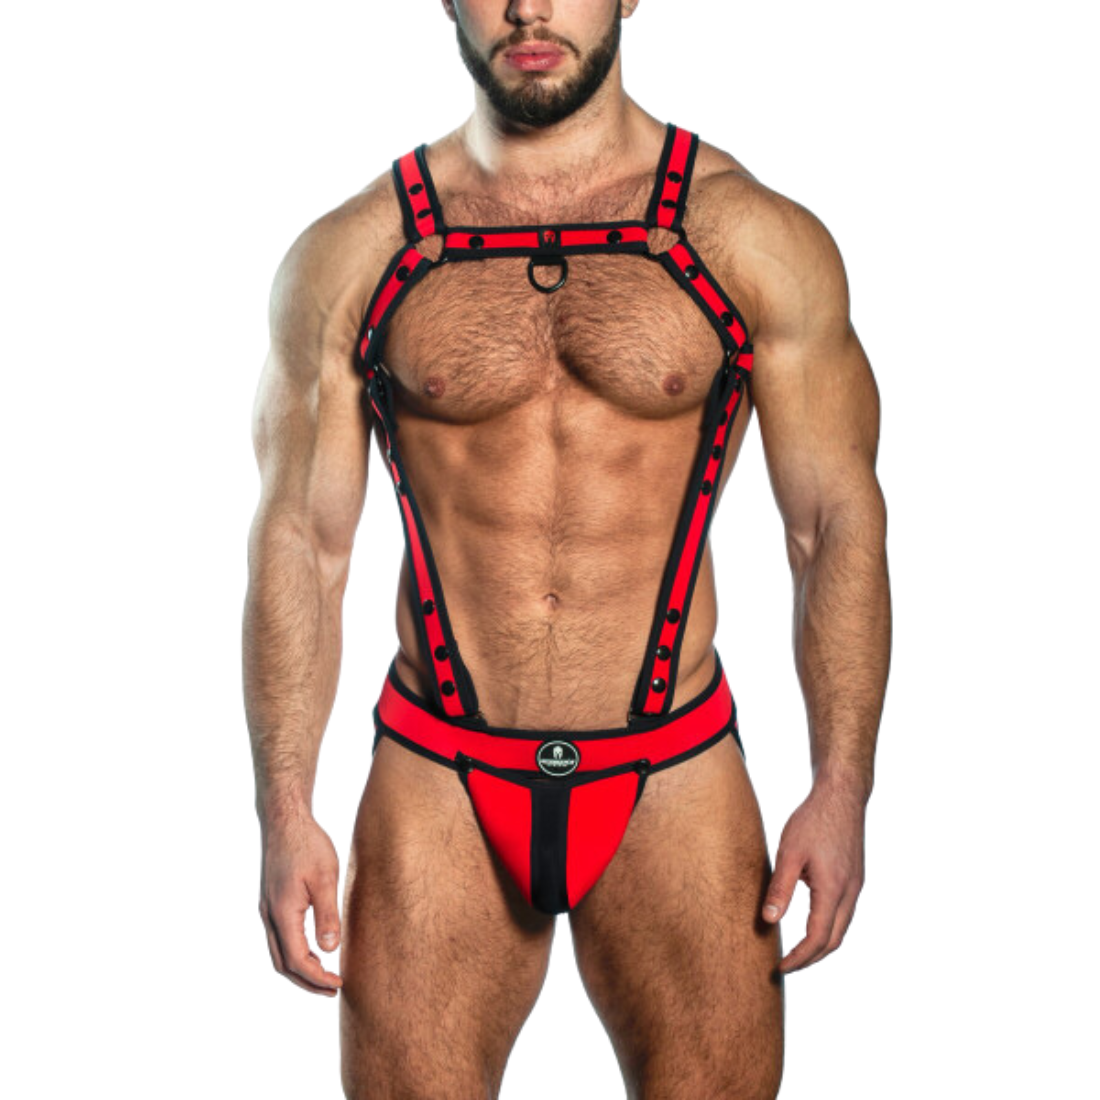 Sexy rode designer jockstrap + harnas met zwarte biezen en drukknopen, ontworpen door het Italiaanse modehuis Sparta’s Harness en te koop bij Flavourez.